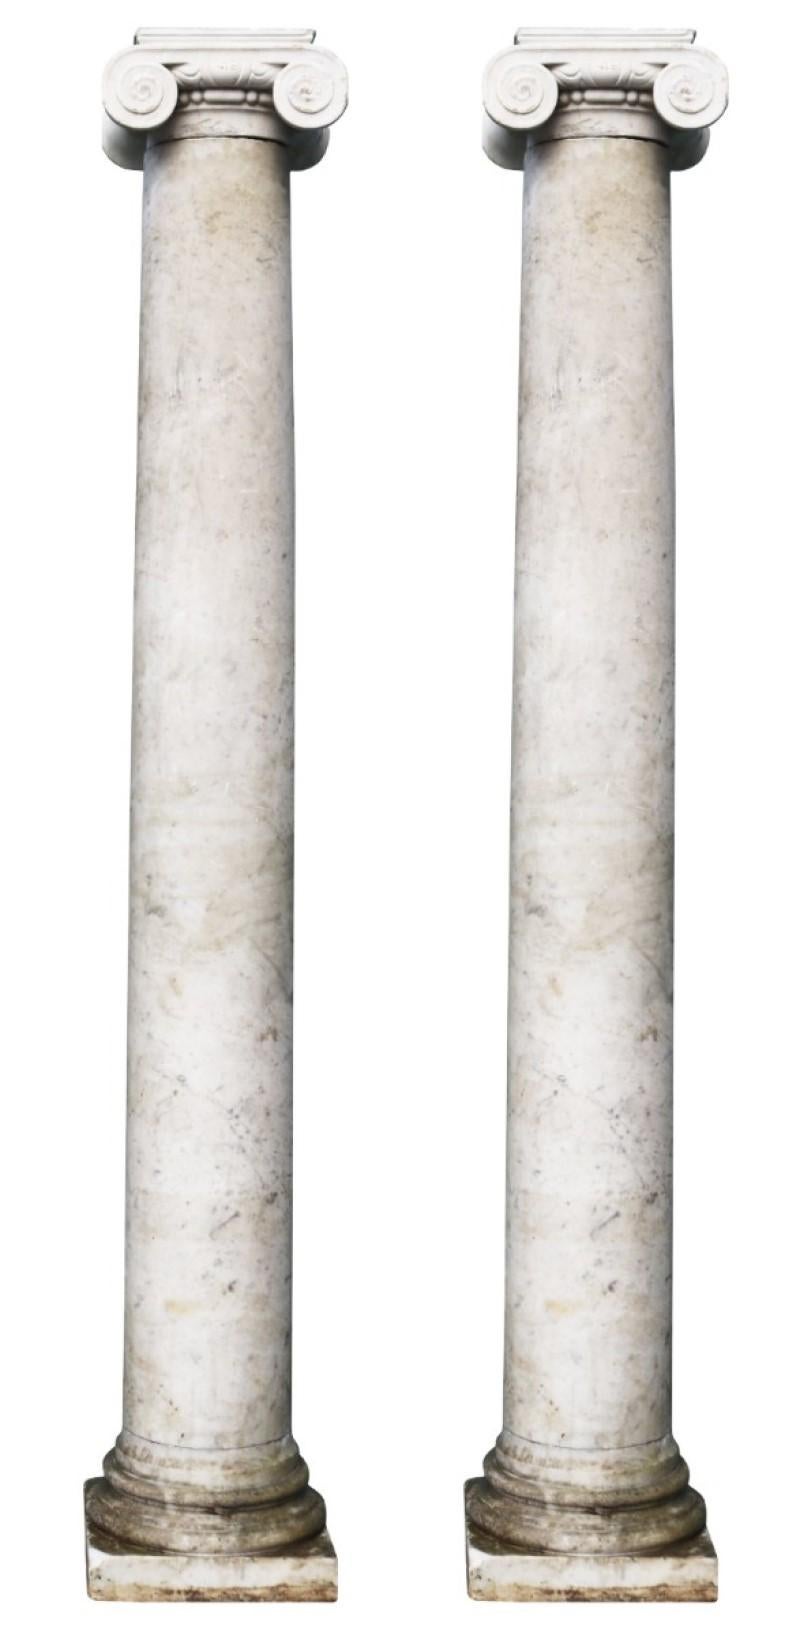 Deux colonnes de marbre d'ordre ionique légèrement veiné. Ces colonnes d'époque géorgienne ont été récupérées dans une propriété du Surrey.

Dimensions supplémentaires :

Hauteur des colonnes - 206,5 et 208 cm

Section de la base 33 x 33